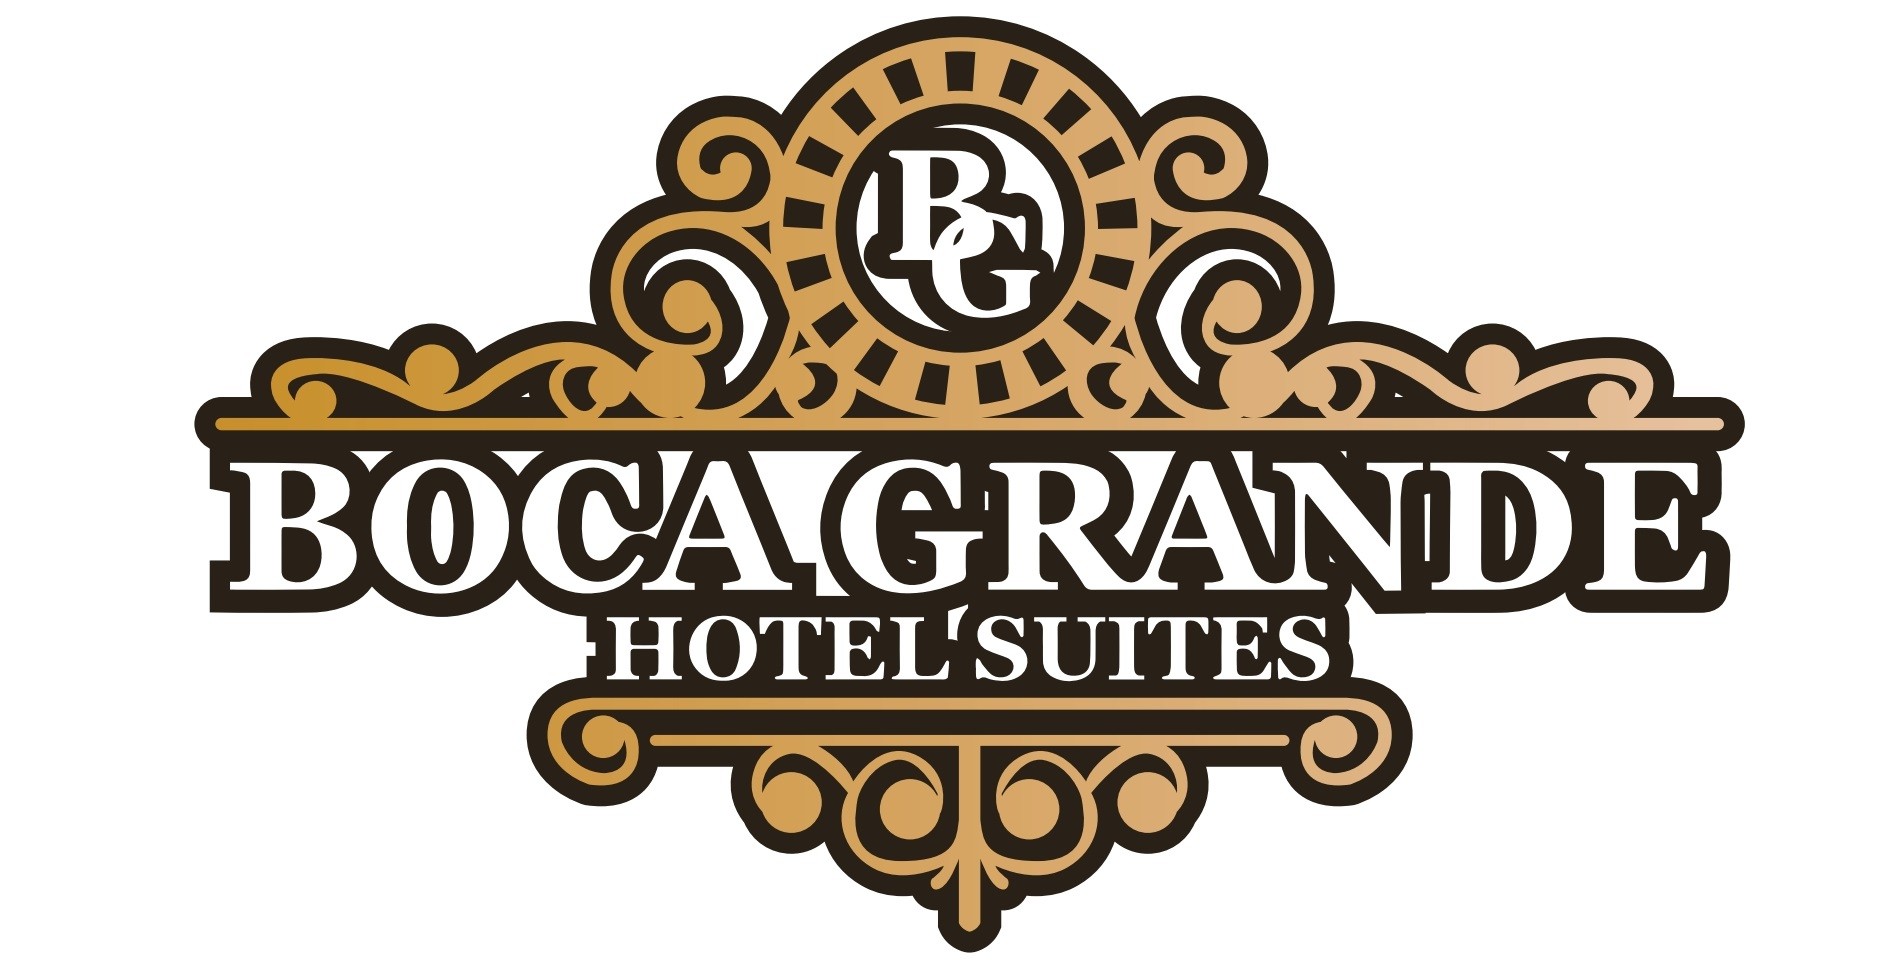 empleos disponibles - Boca Grande Hotel Suites en Boca Chica Andress solicita Recepcionista